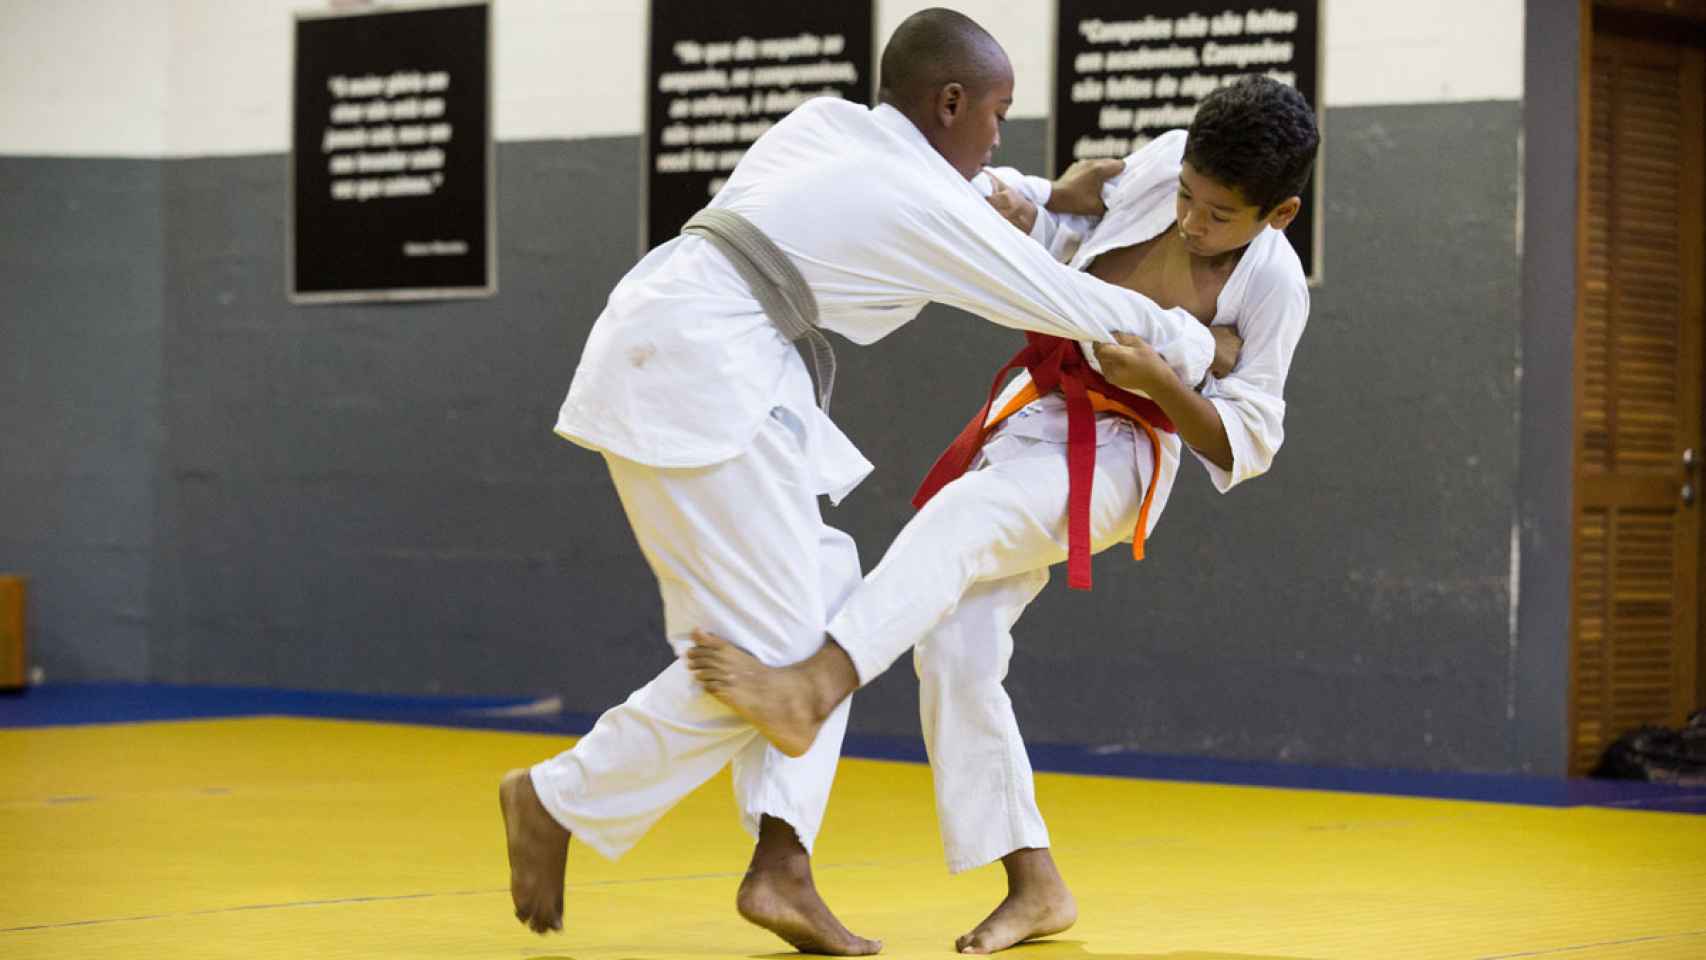 Dos niños combaten en el tatami de la institución.